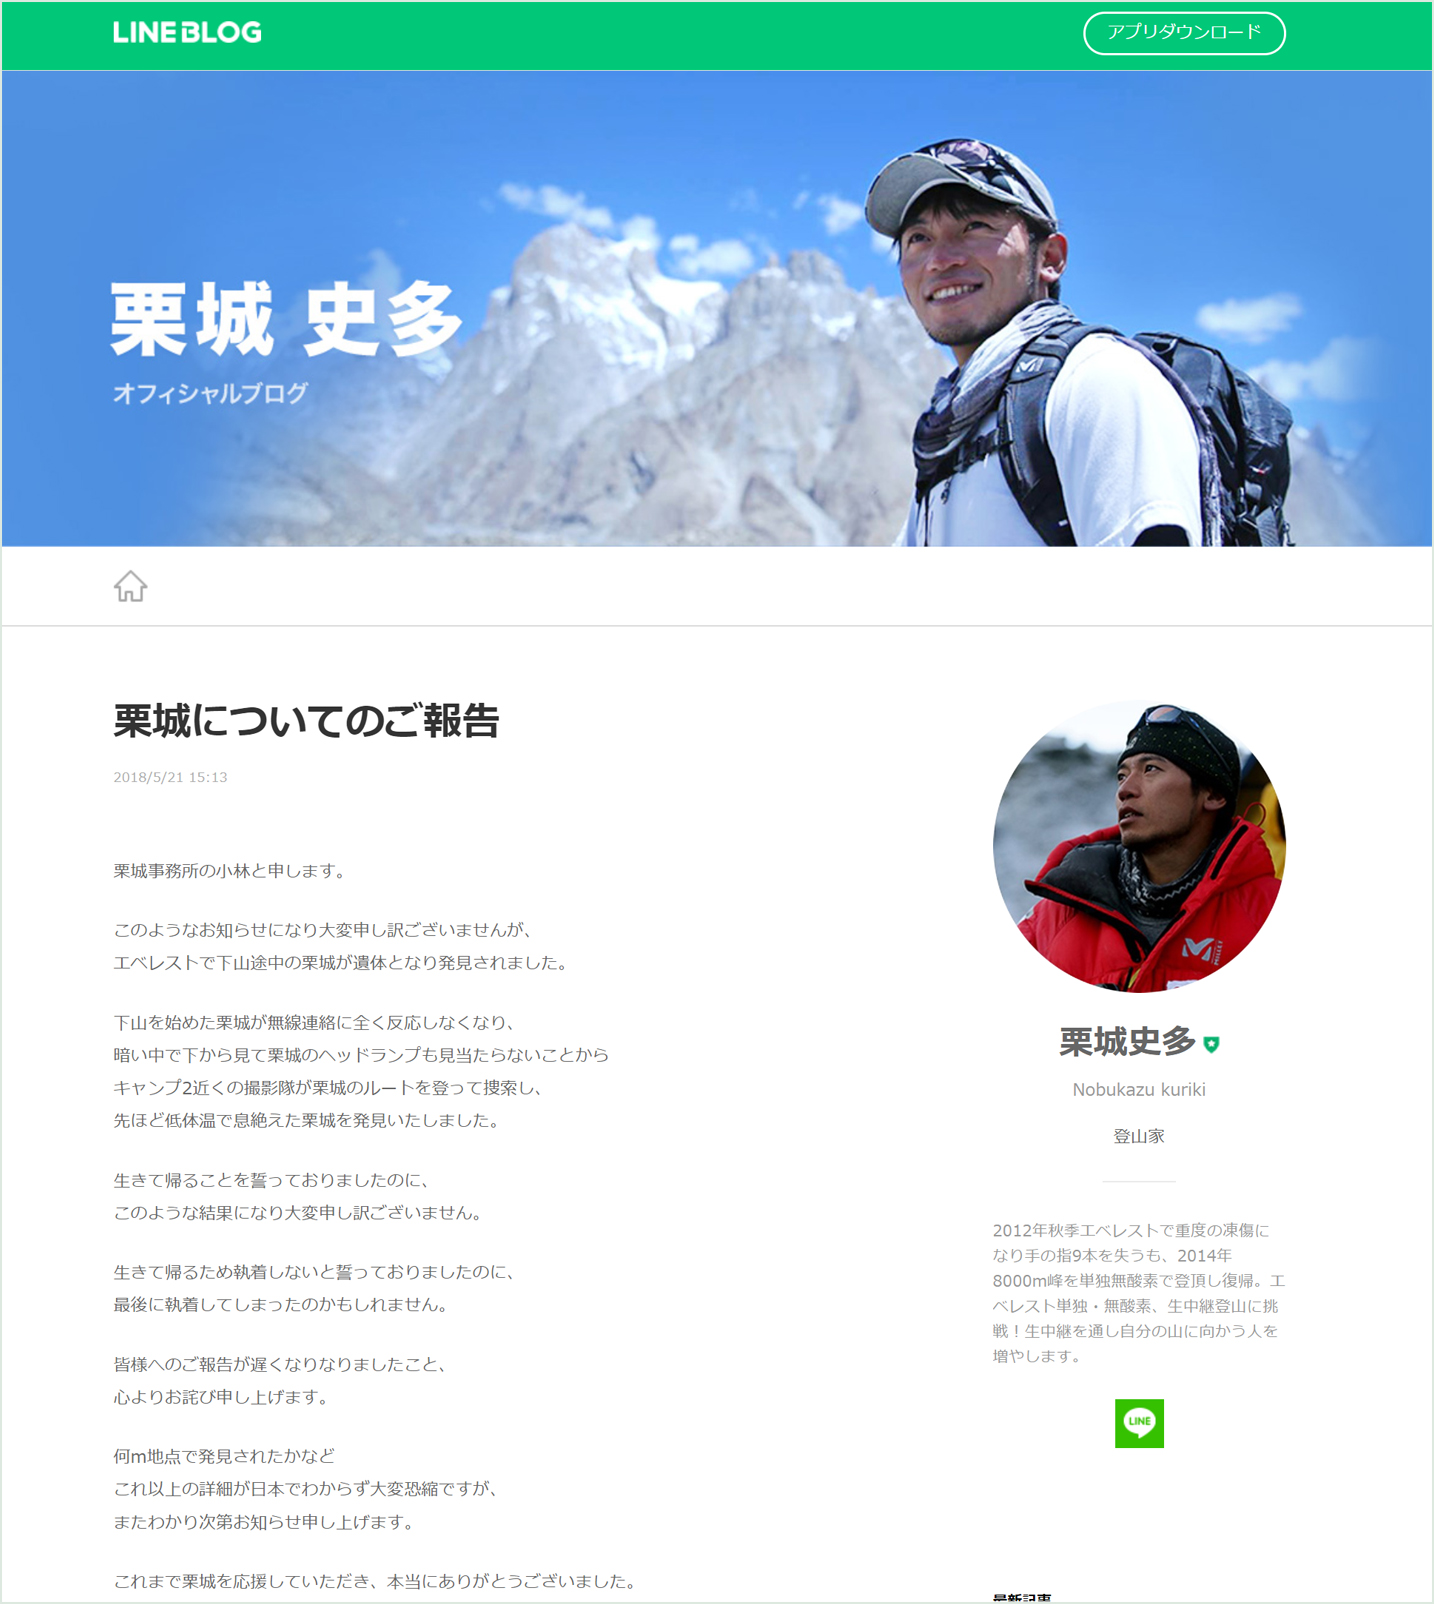 所属事務所が5月21日(月)、栗城史多さんの公式ブログで登山中の死去を報告しました